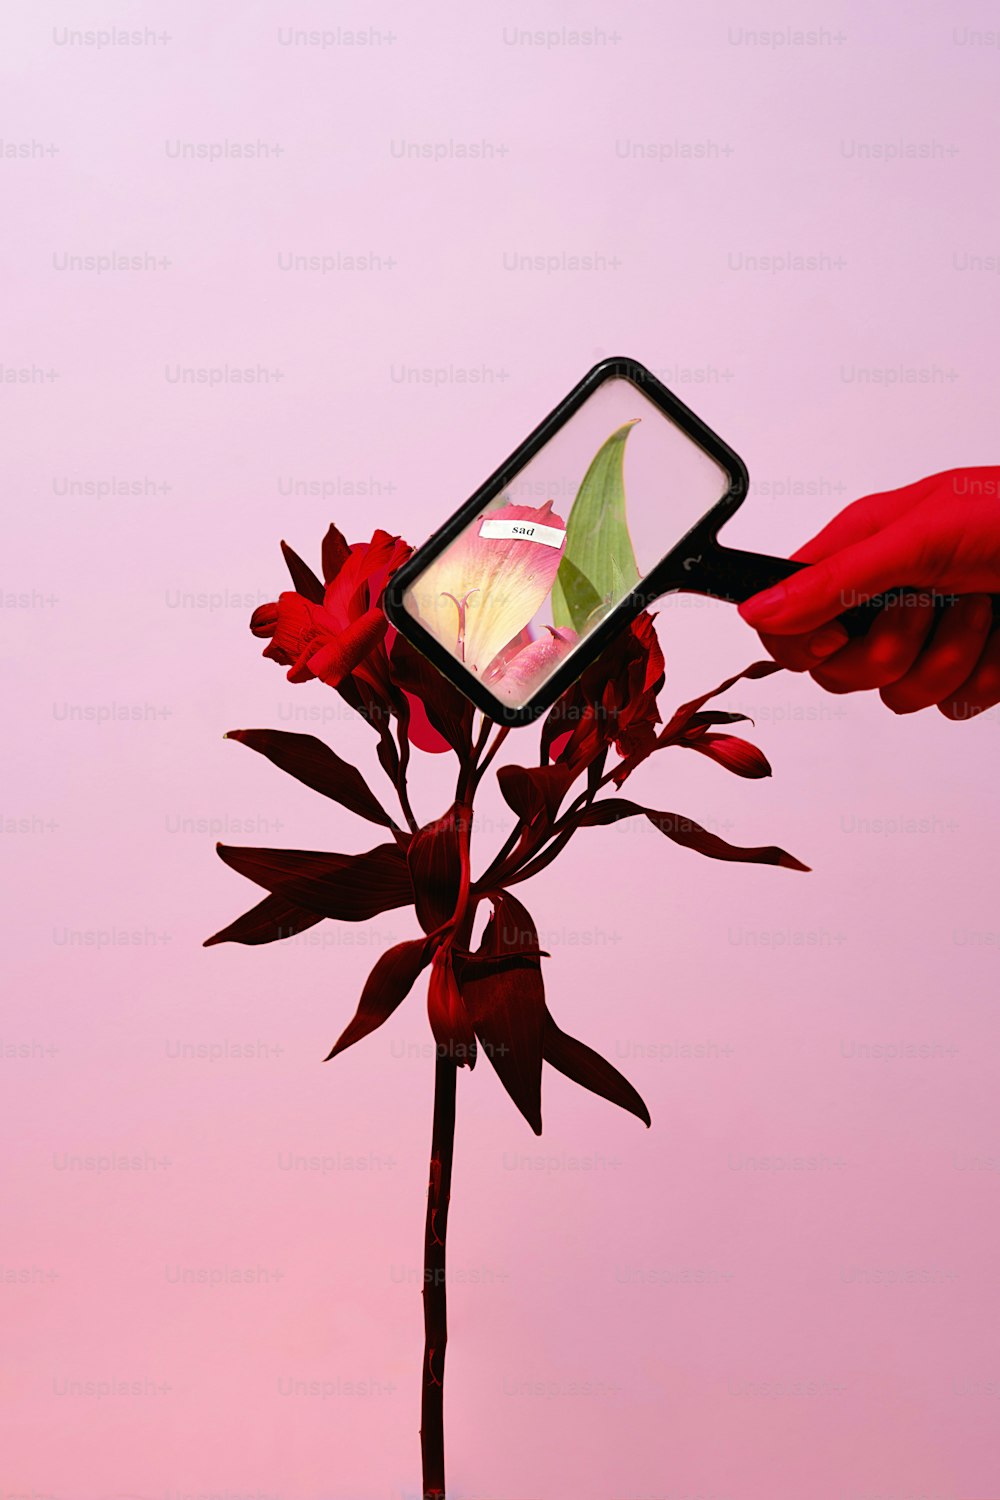 una persona sosteniendo un teléfono celular hacia una flor